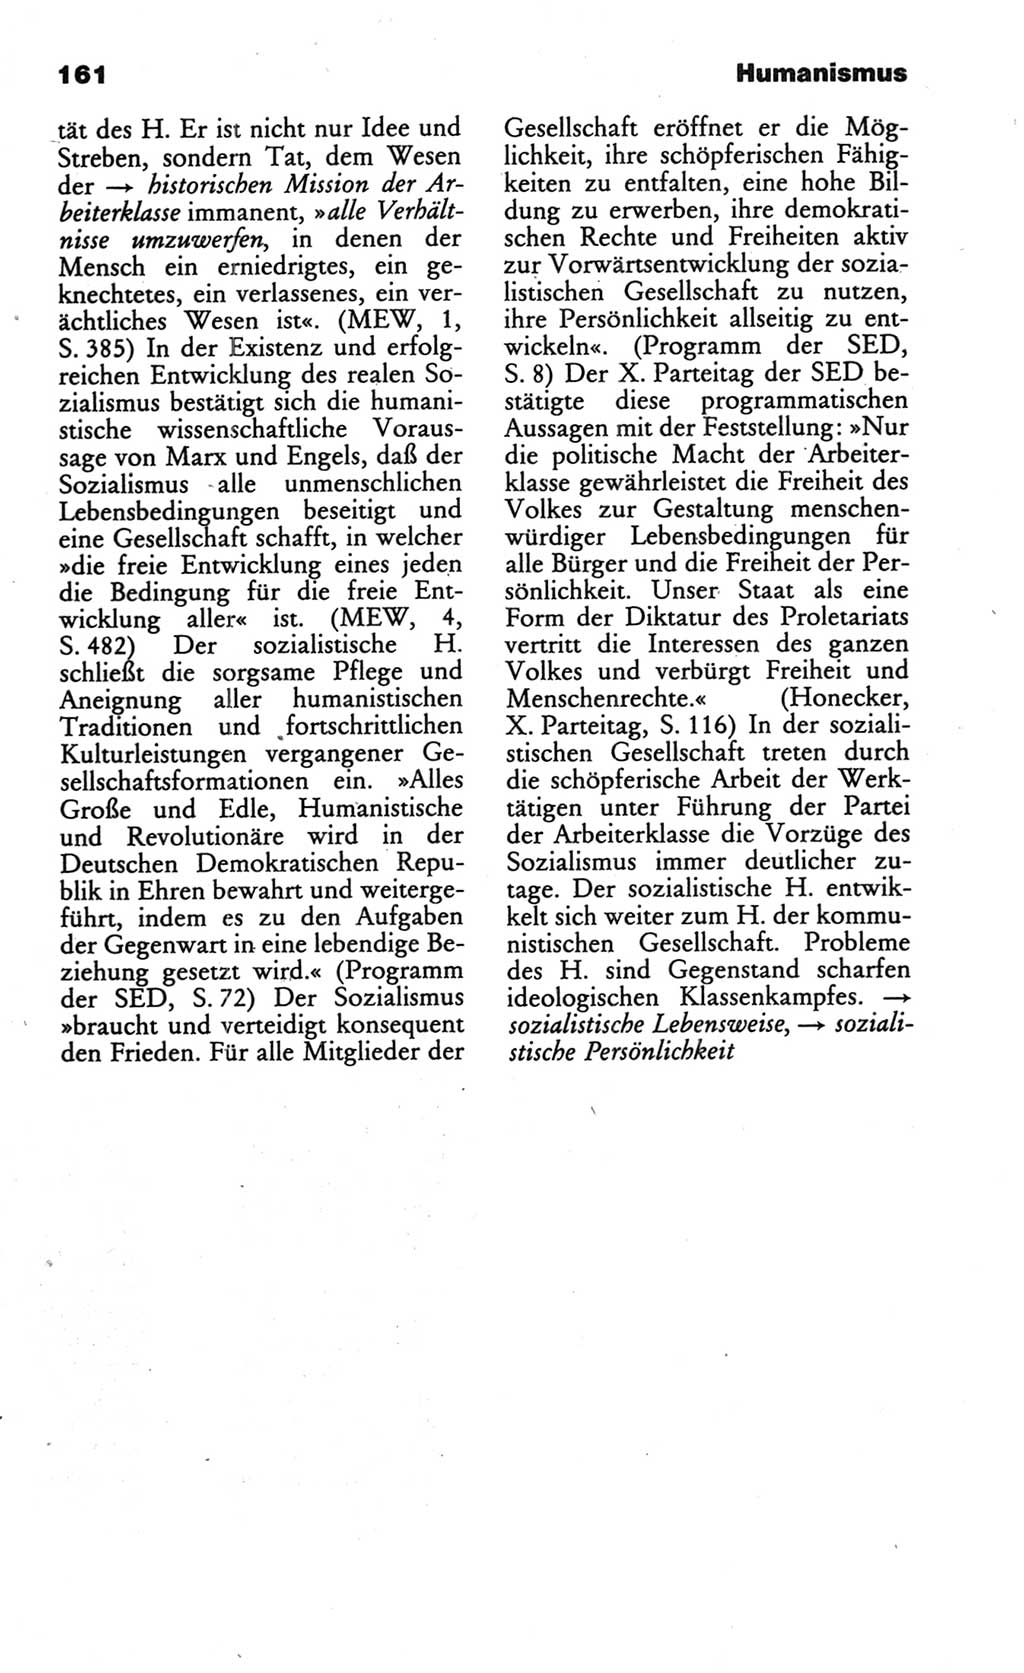 Wörterbuch des wissenschaftlichen Kommunismus [Deutsche Demokratische Republik (DDR)] 1986, Seite 161 (Wb. wiss. Komm. DDR 1986, S. 161)